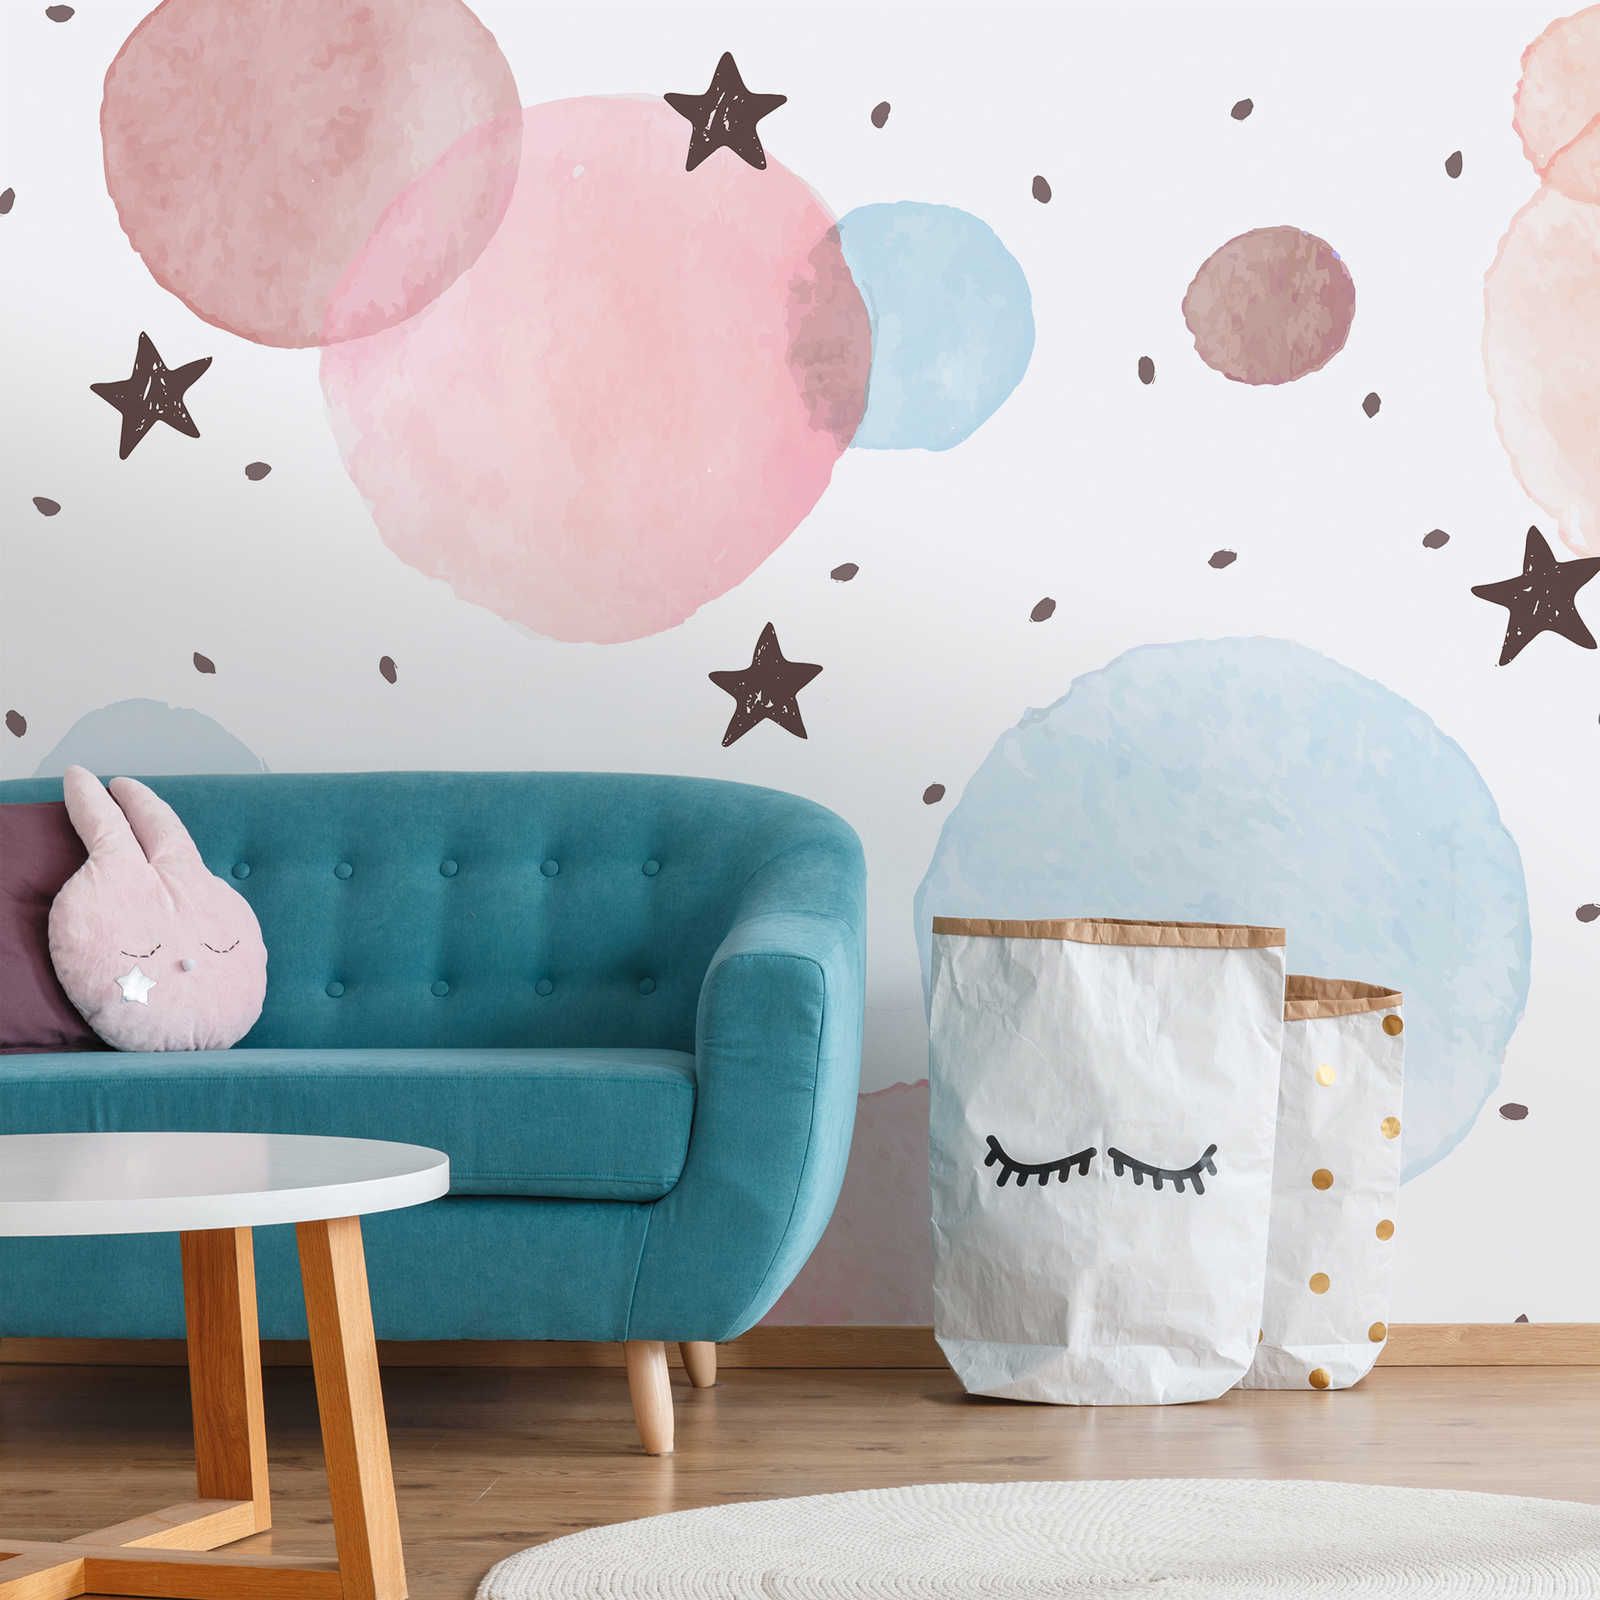 Kinderkamer muurschildering met sterren, stippen en cirkels - structuurvlies
